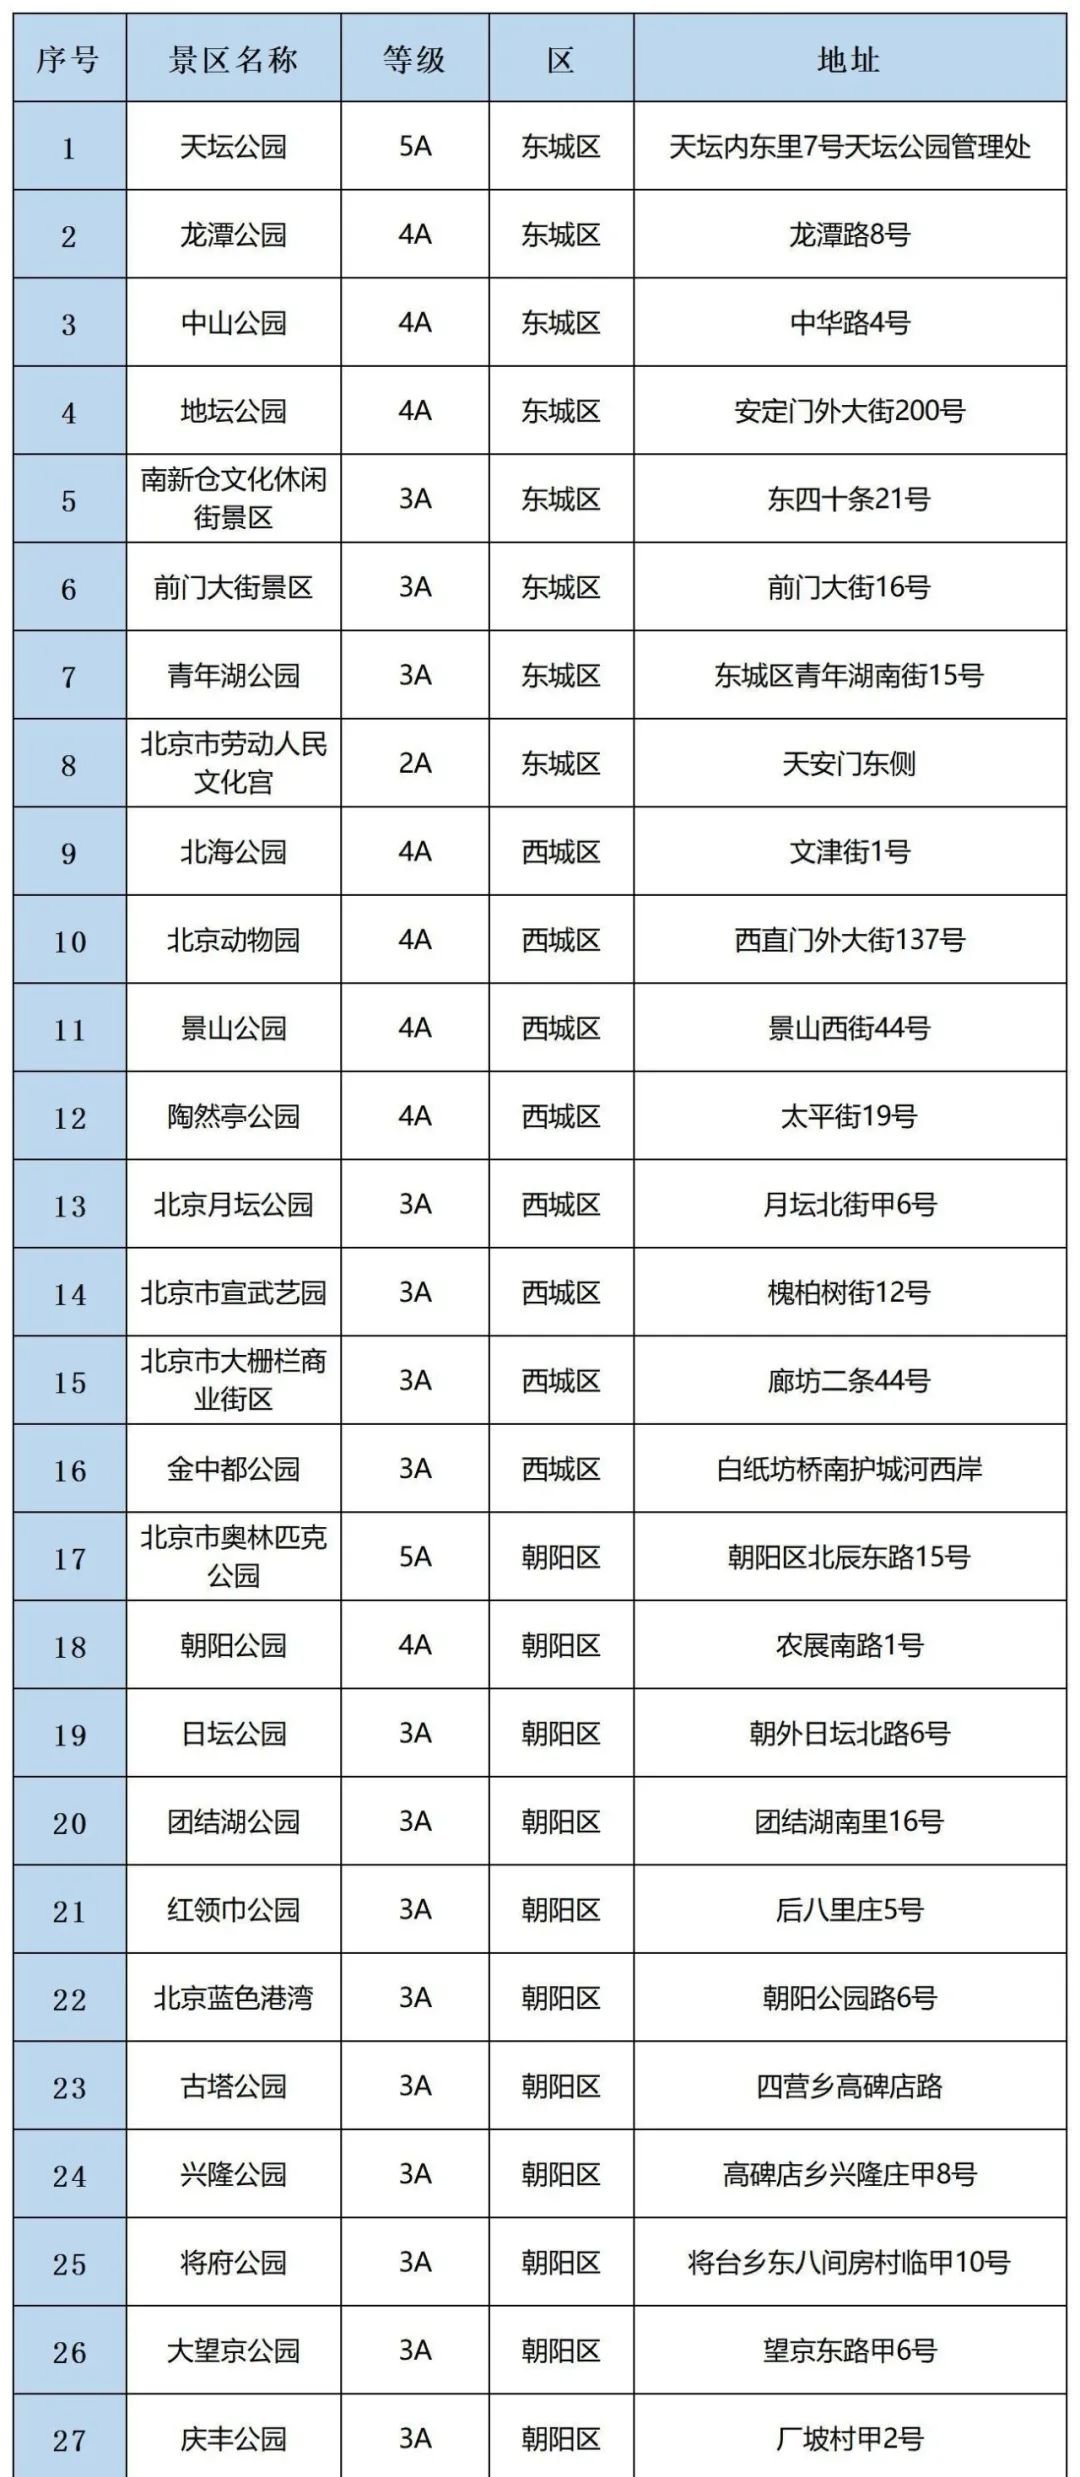 2020五一北京开放景区 北京80家开放景区名单 2020五一北京景区预约